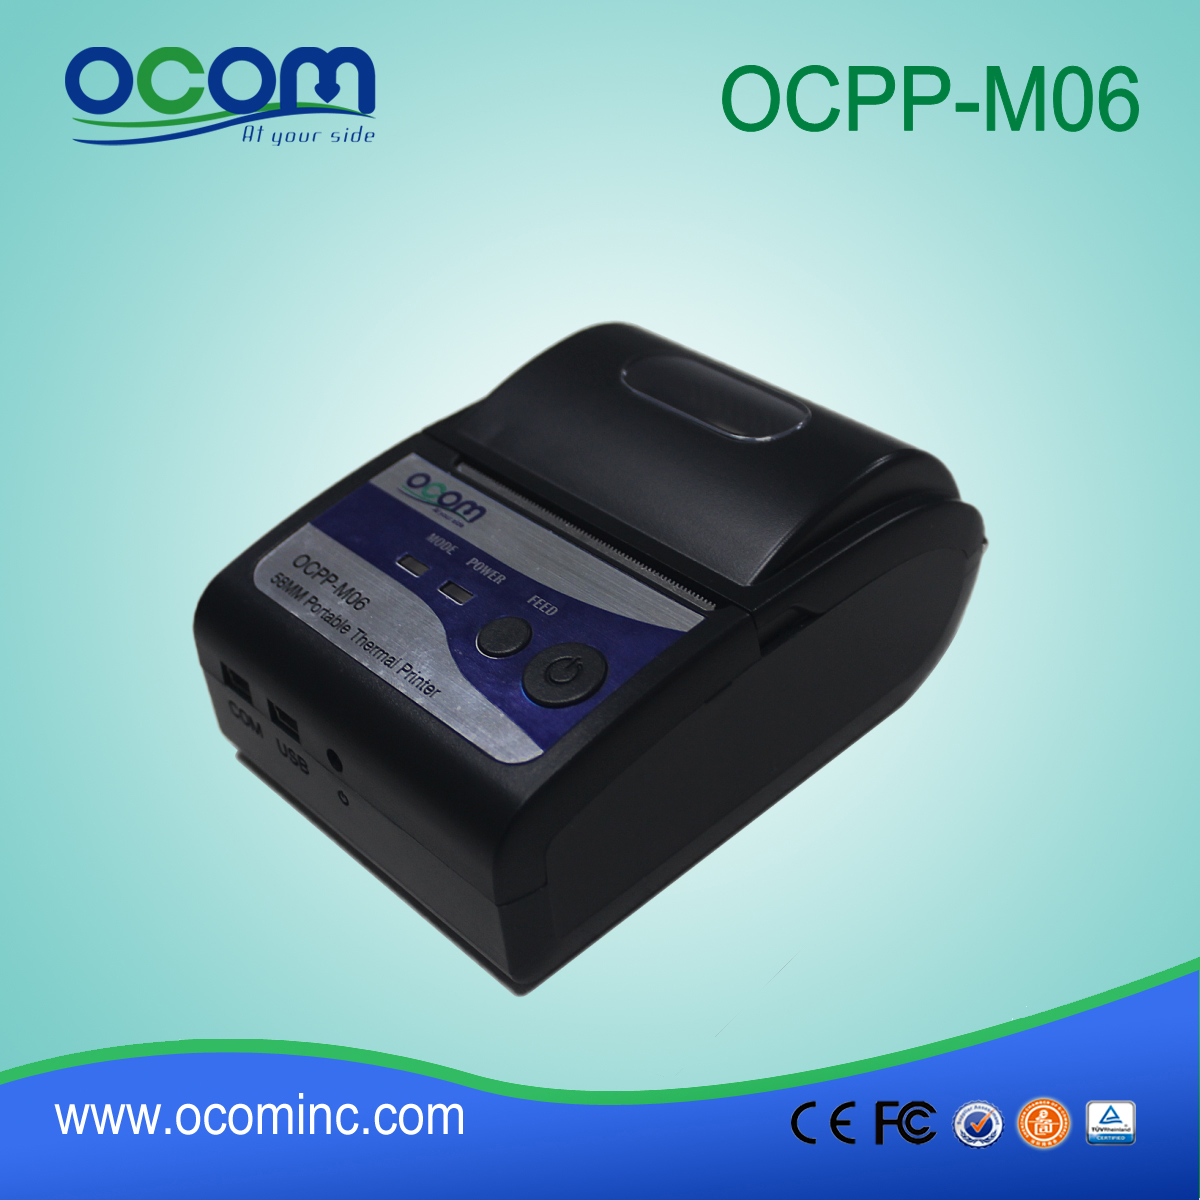 OCPP-M06: OCOM vendedora caliente de 58mm barato impresora térmica de recibos